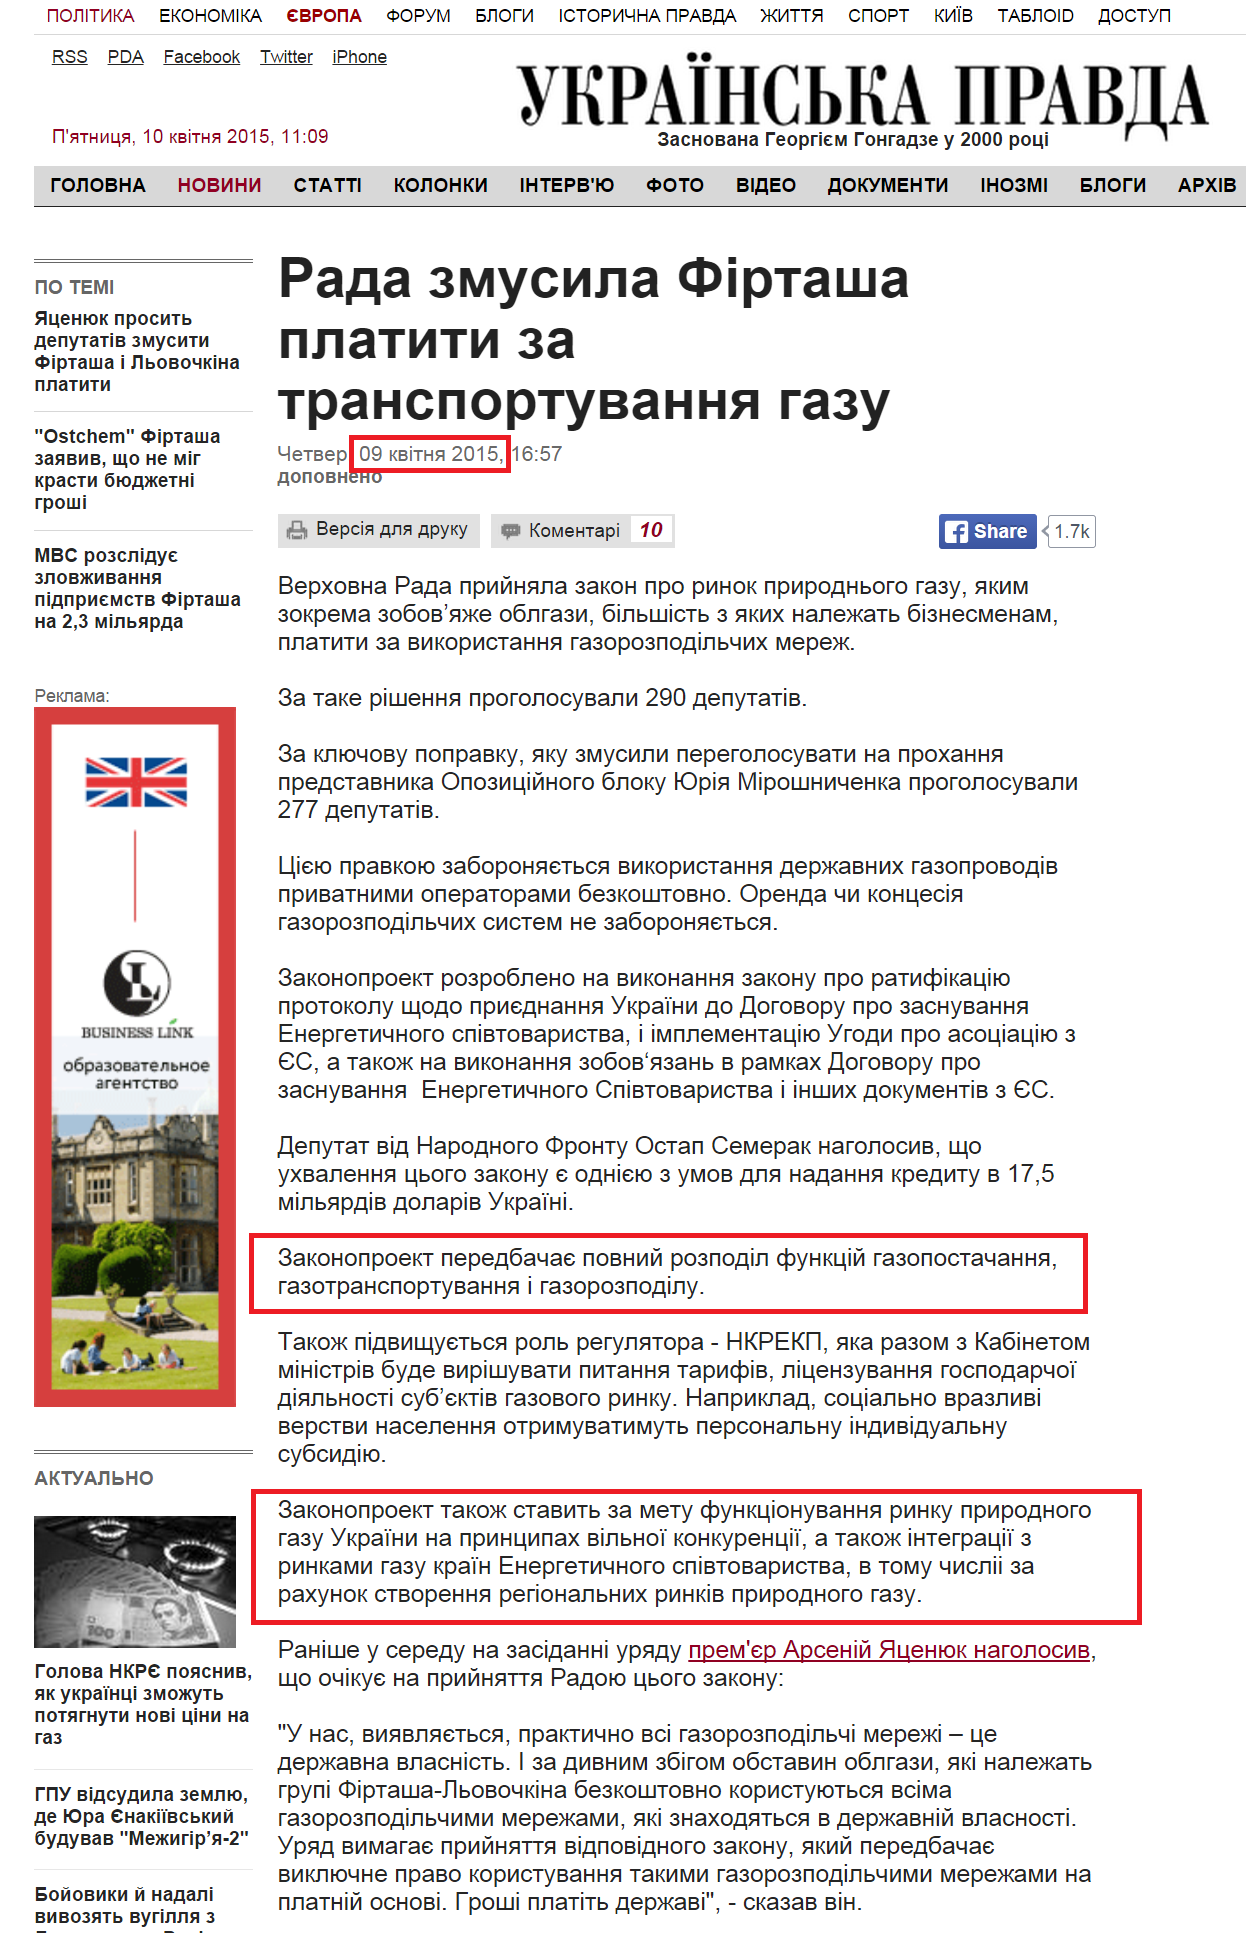 http://www.pravda.com.ua/news/2015/04/9/7064290/